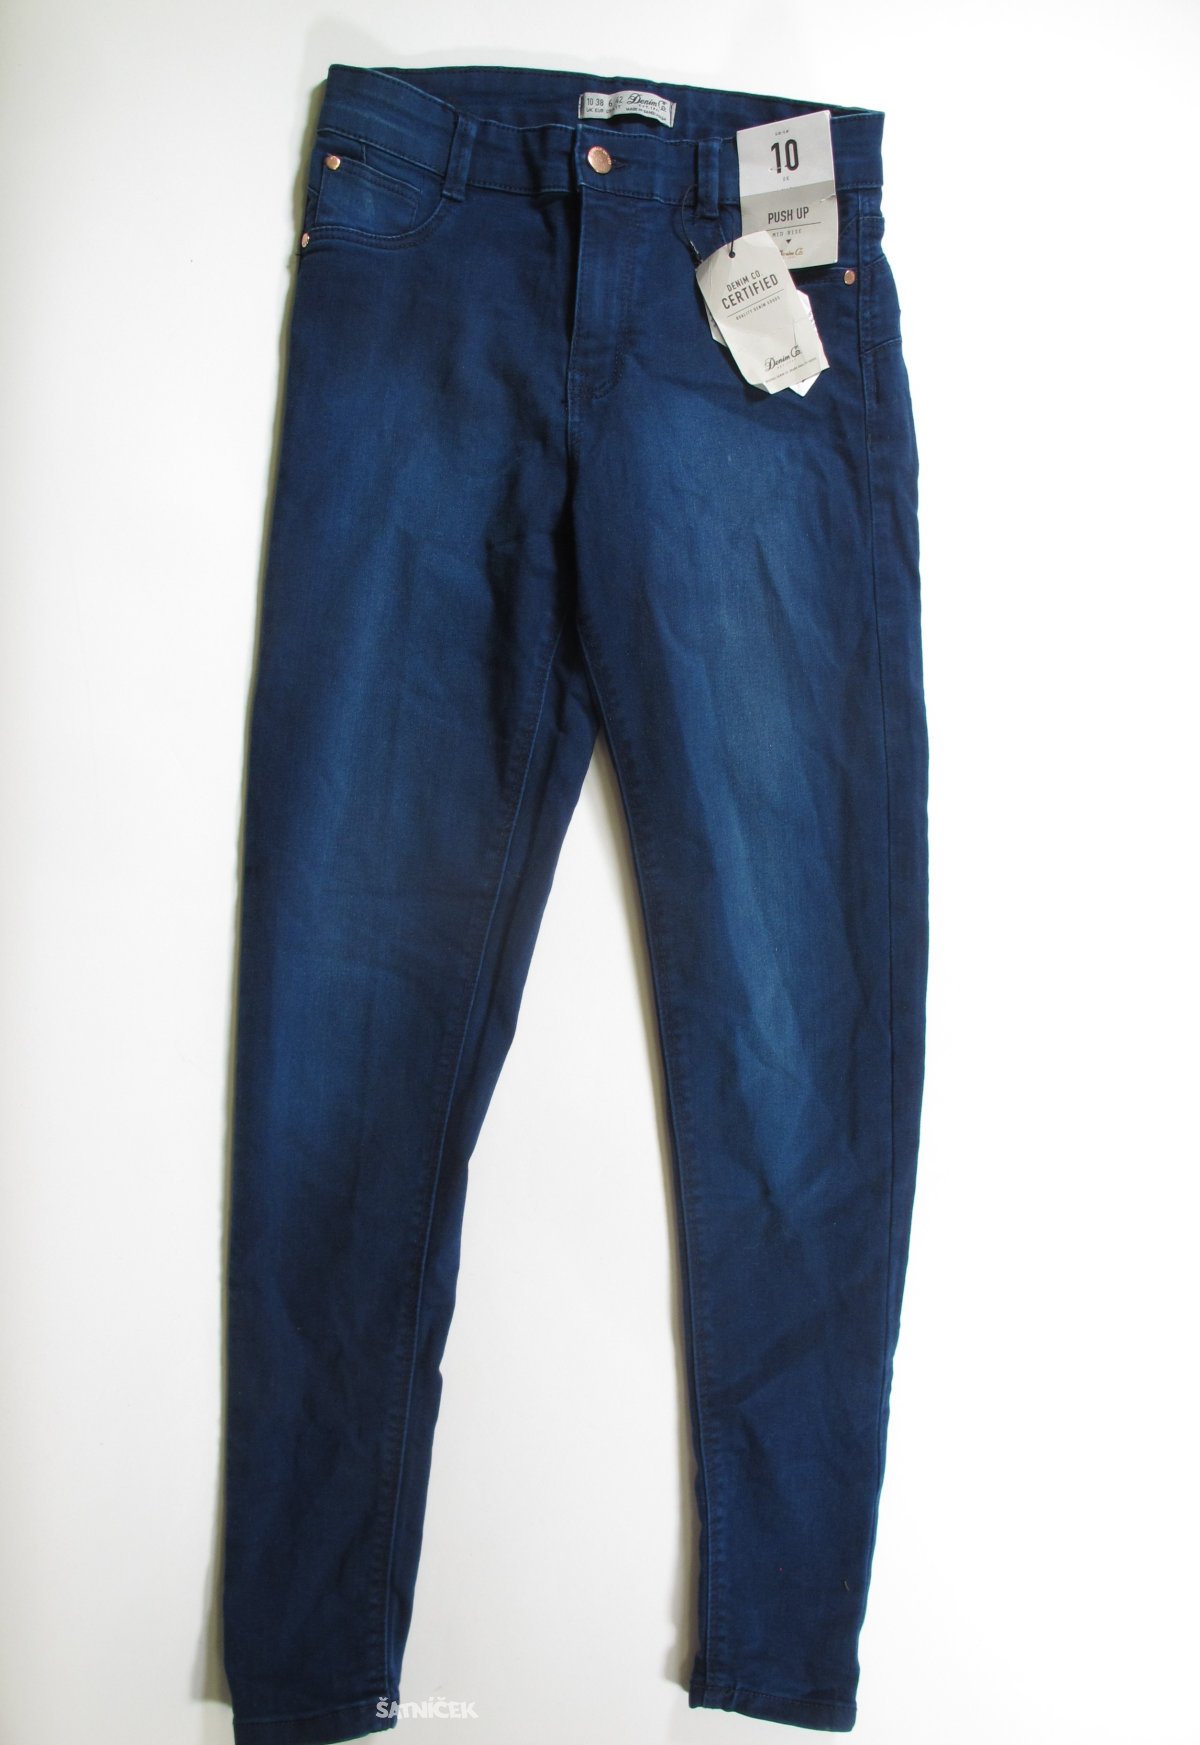 Modré džínové kalhoty pro holky outlet 